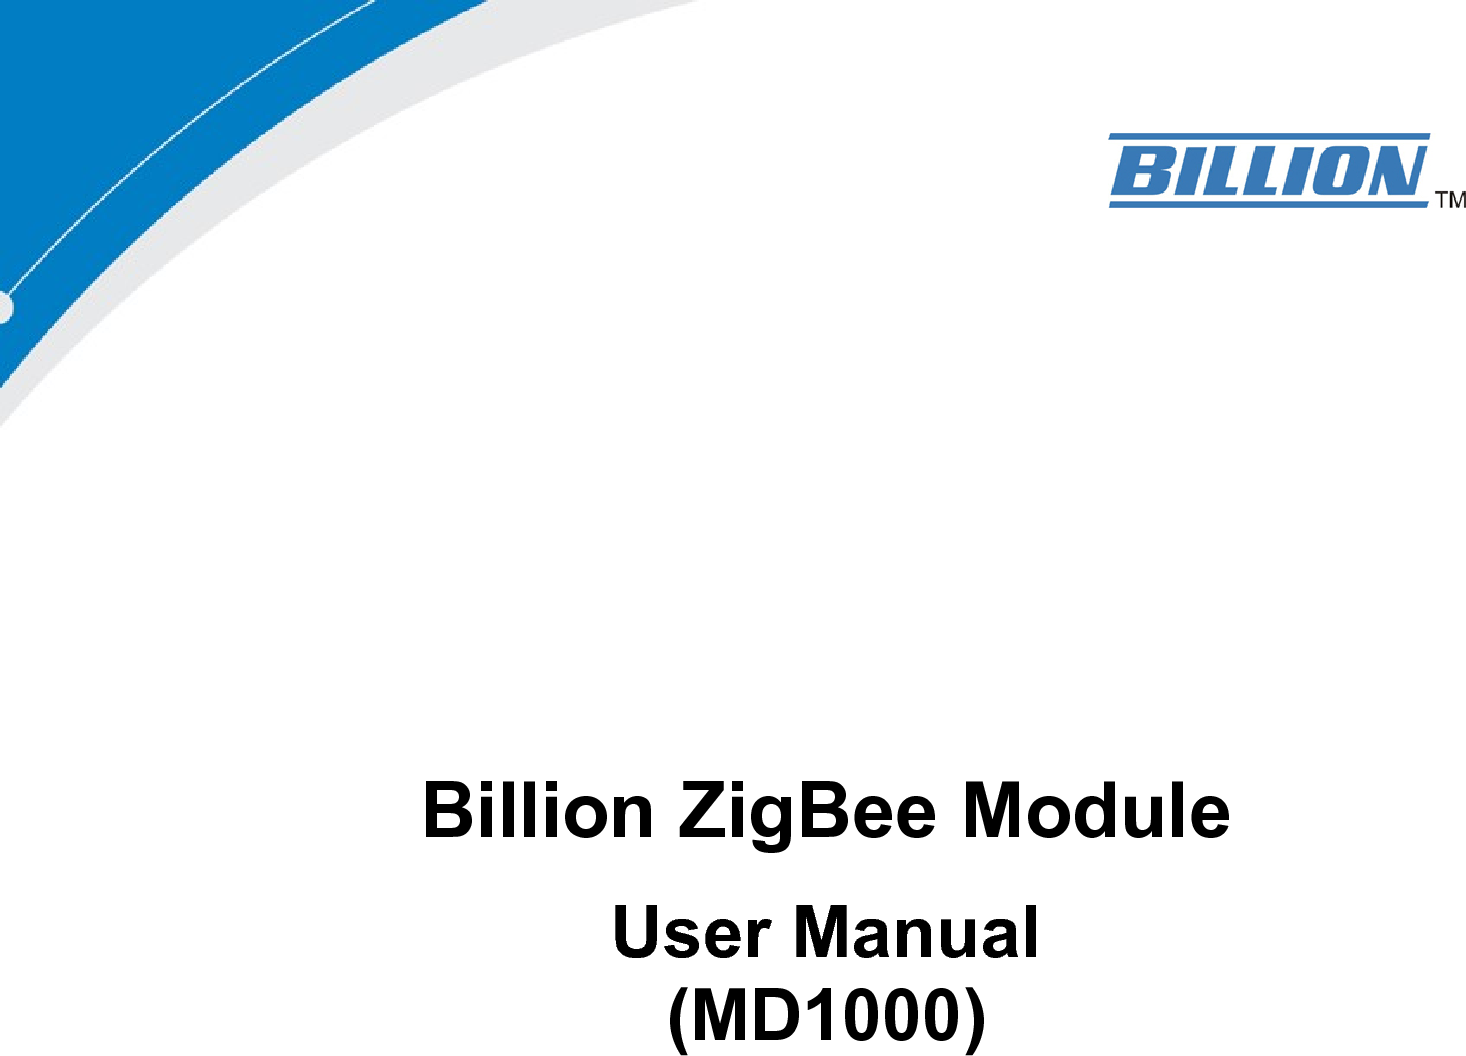 Billion ZigBee Module User Manual (MD1000) 